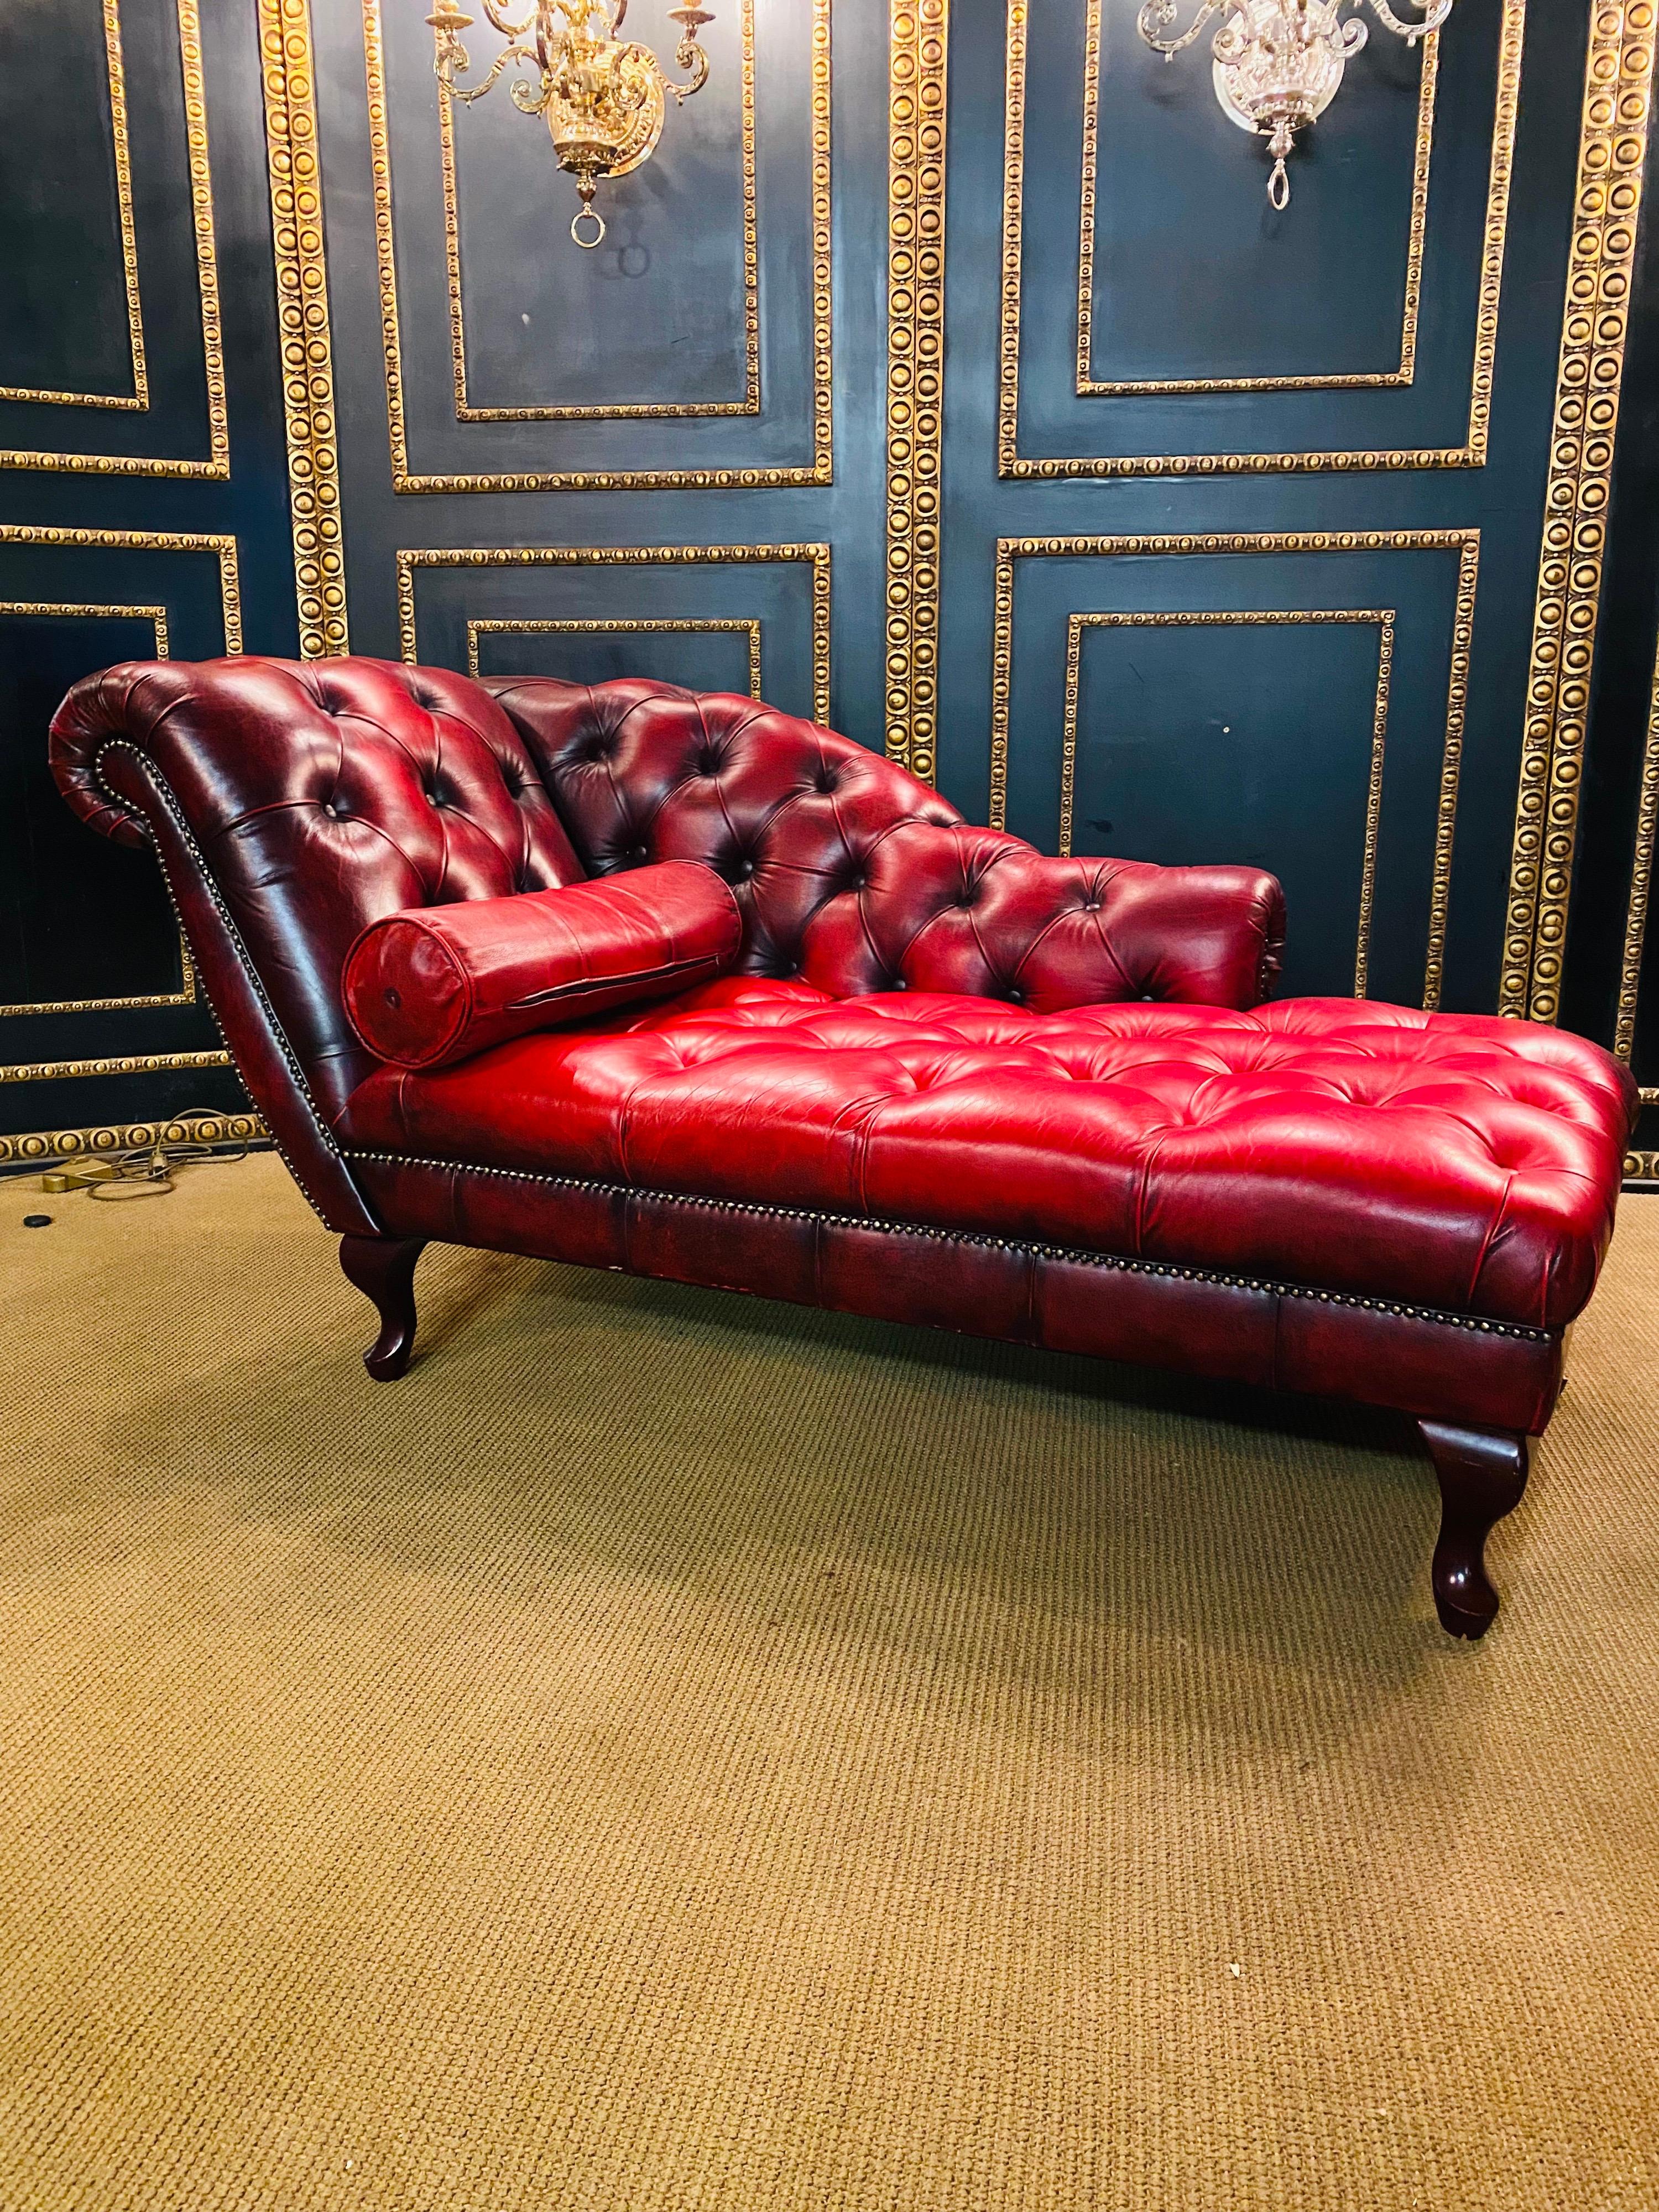 Wir freuen uns, dieses schöne getuftete, handgefärbte Chesterfield Chaise Lounge Daybed aus rotem Leder zum Verkauf anzubieten.

Ein sehr gut aussehendes, gut verarbeitetes und außergewöhnlich bequemes Stück. Diese Liege ist dann von Hand gefärbt